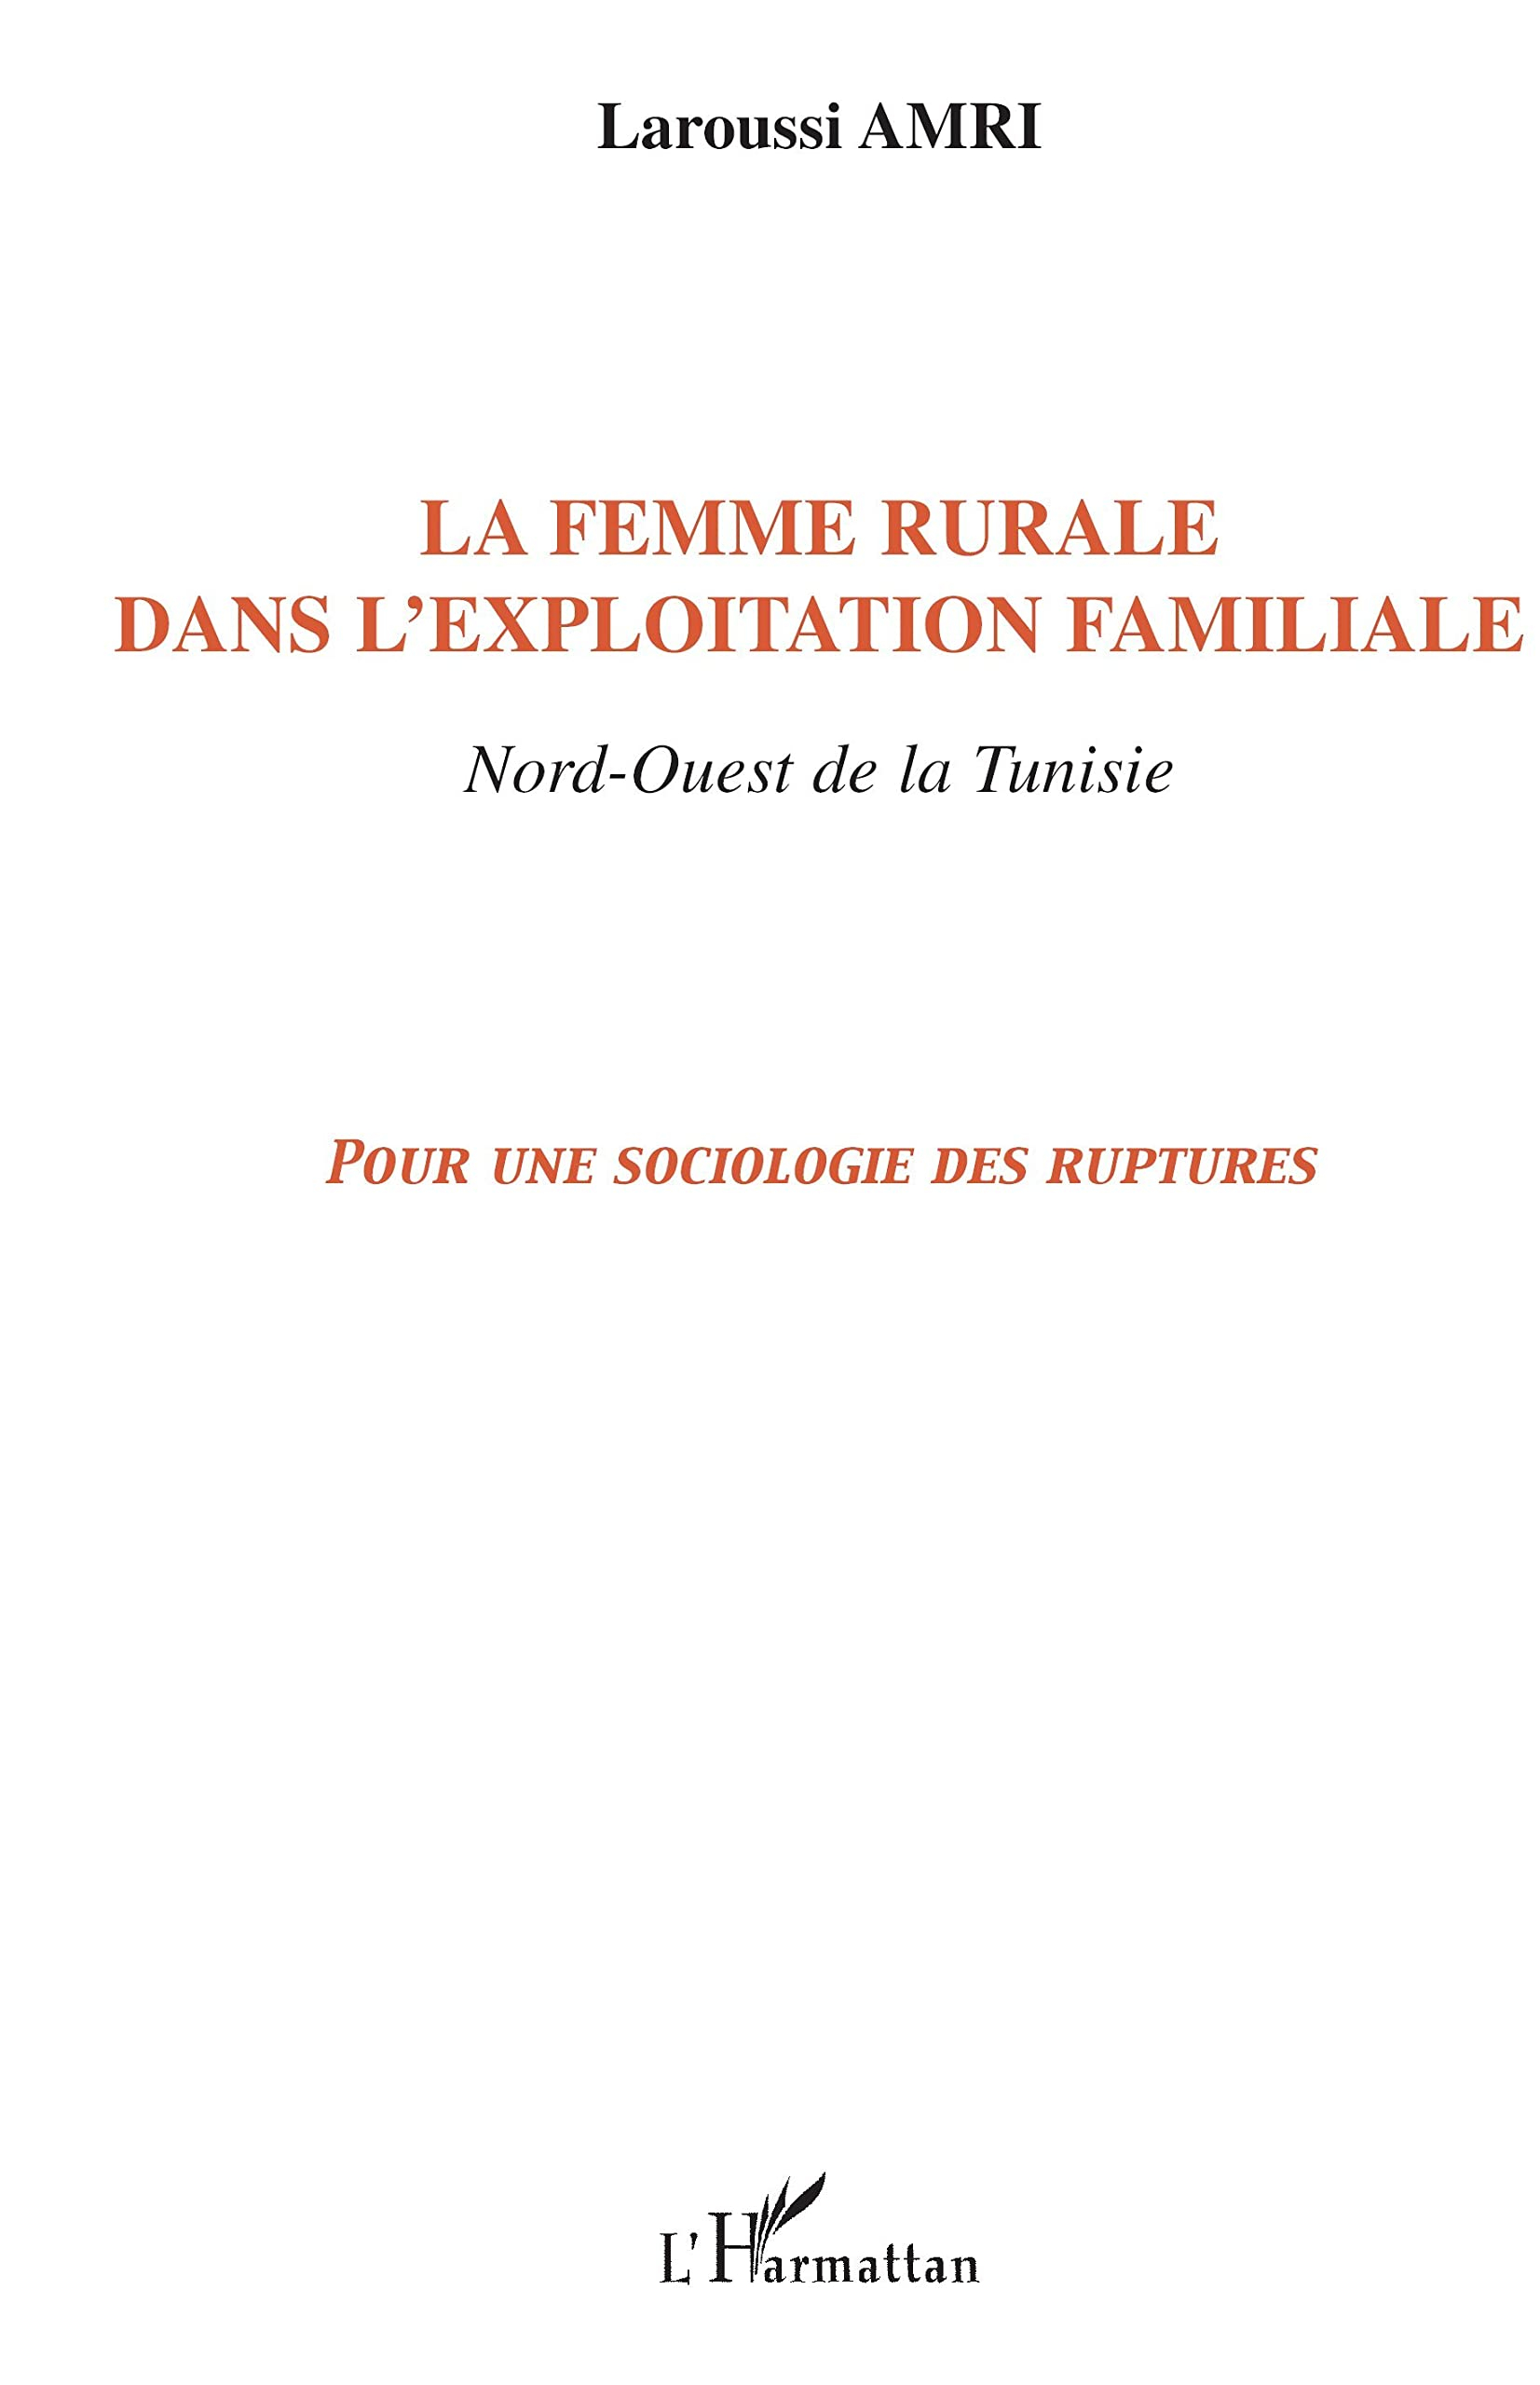 La femme rurale dans l'exploitation familiale : Nord-Ouest de la Tunisie : pour une sociologie des r